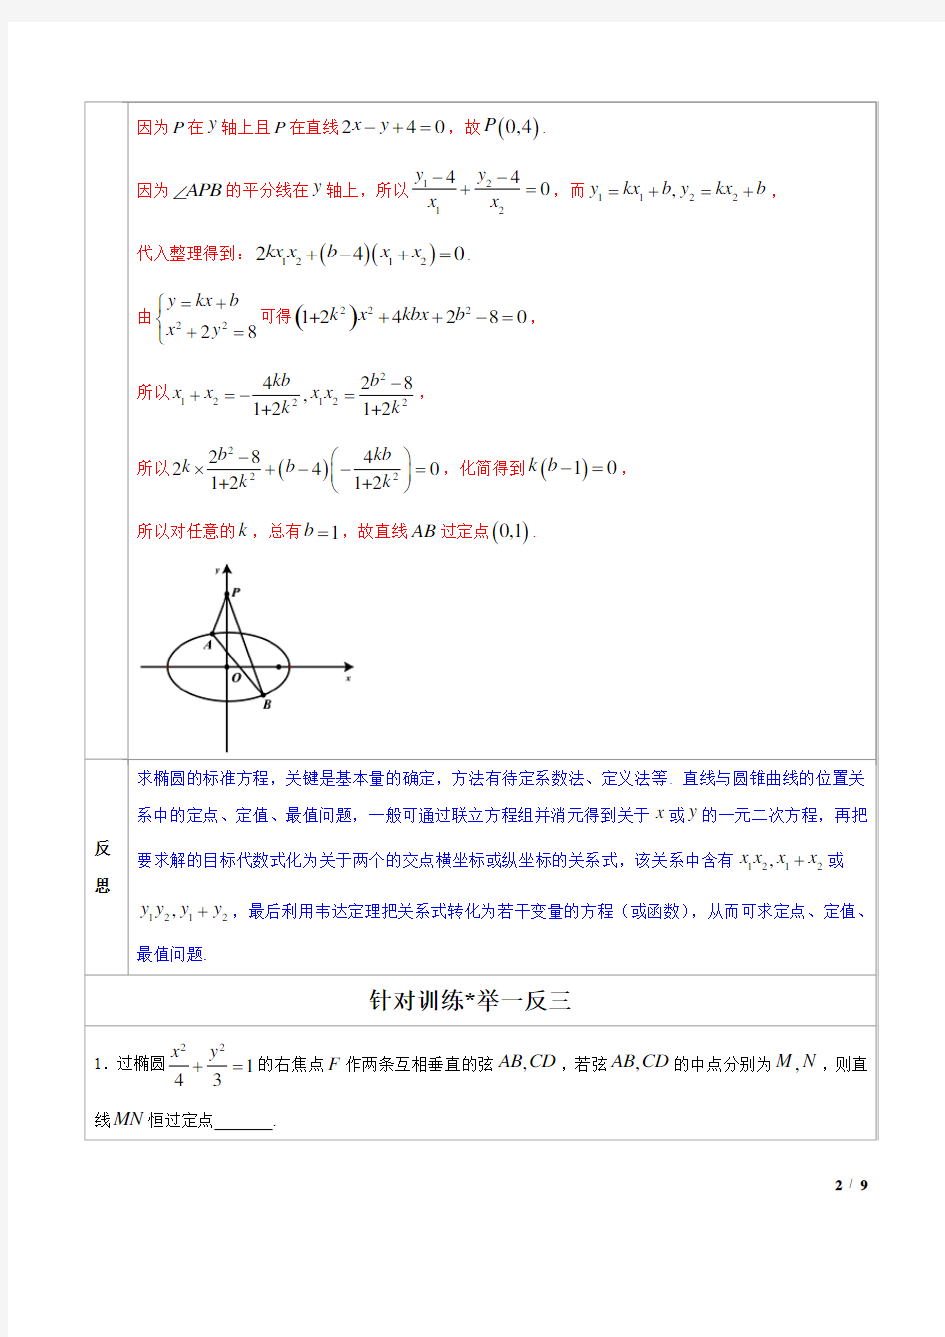 高中数学必备考试技能之二级结论提高速度(2020版)专题14 圆锥曲线中的一类定点问题(解析版)